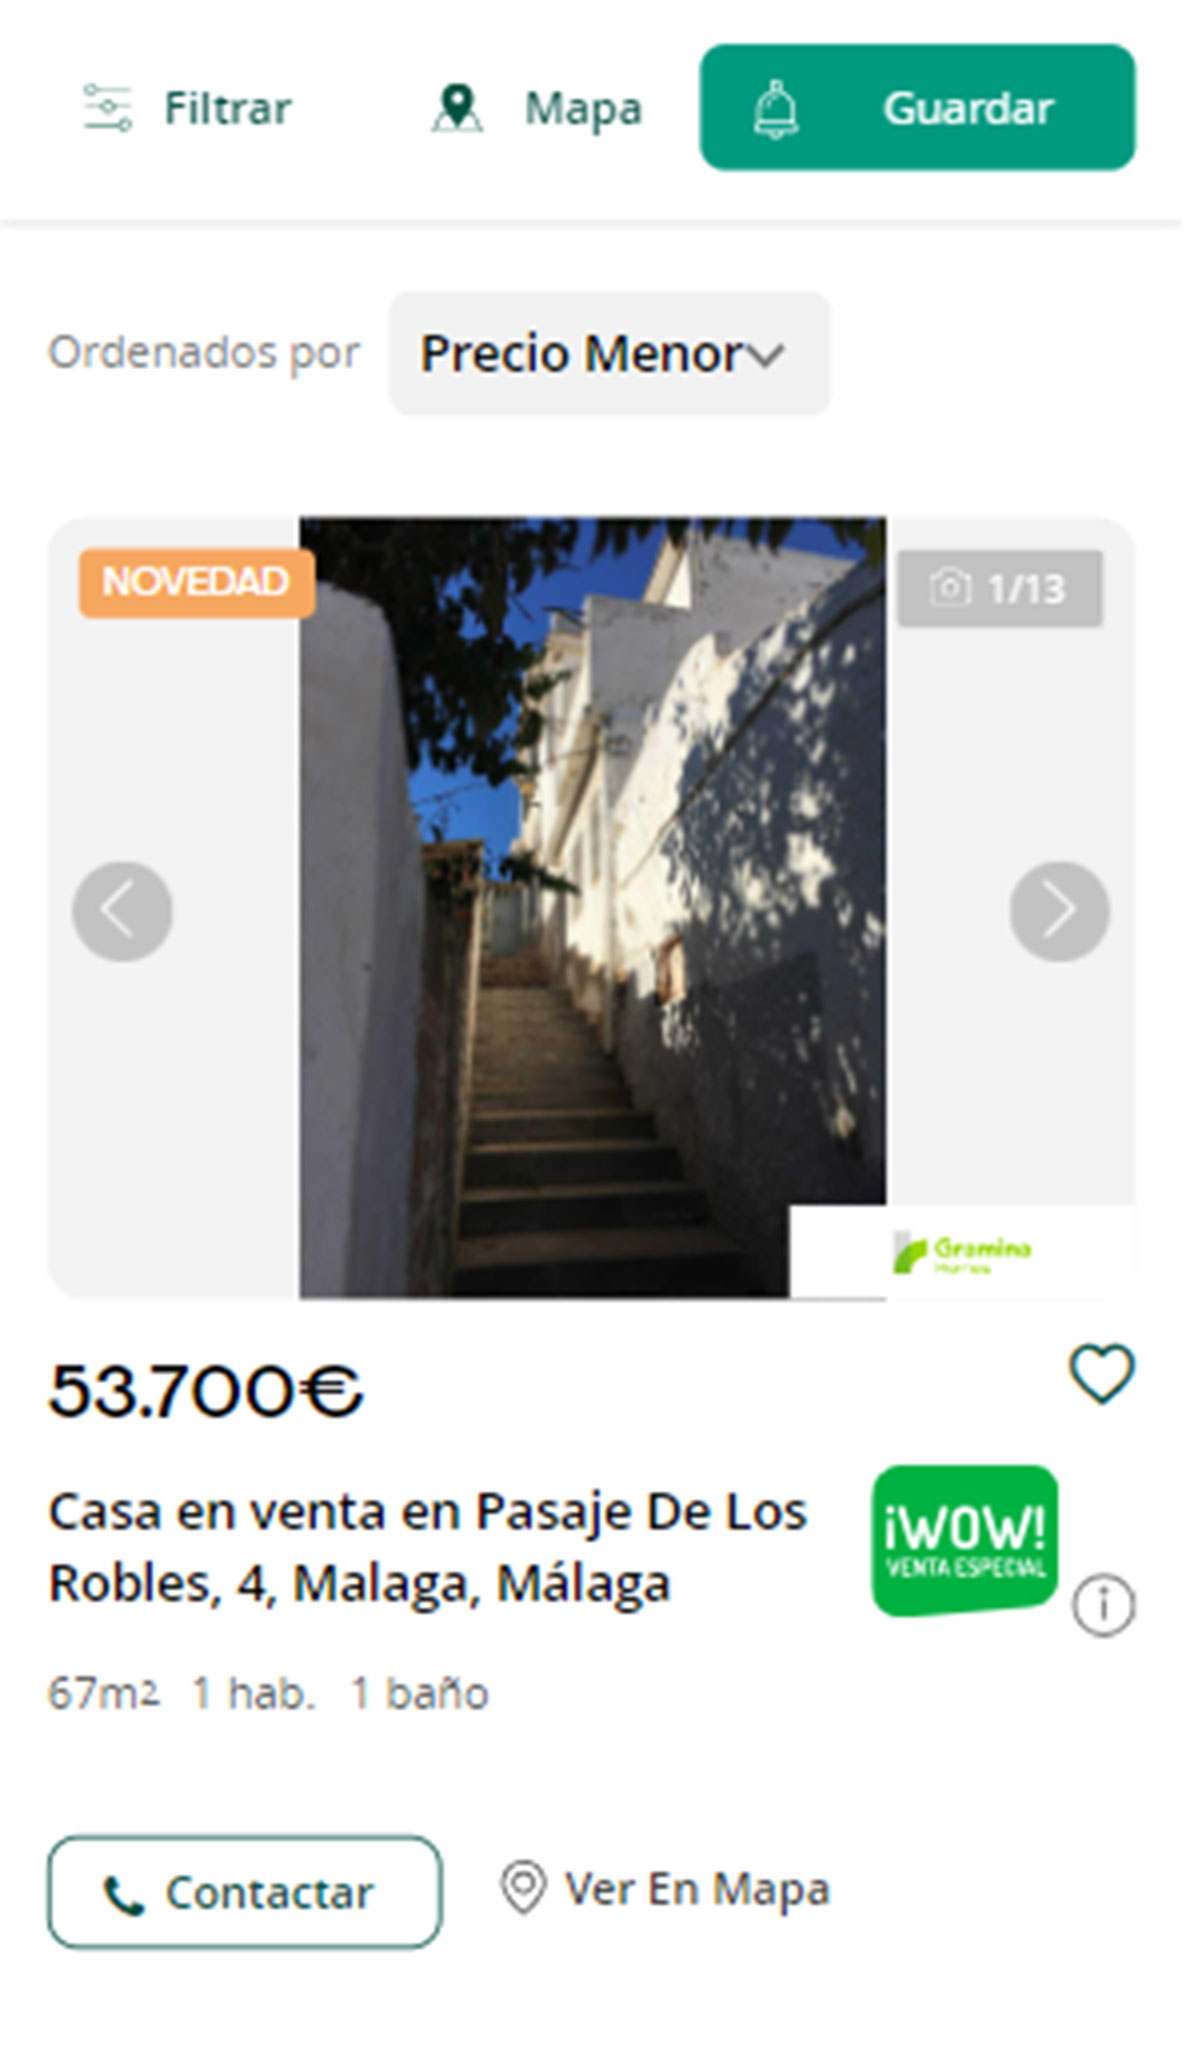 Piso a la venta en Málaga por 53.700 euros